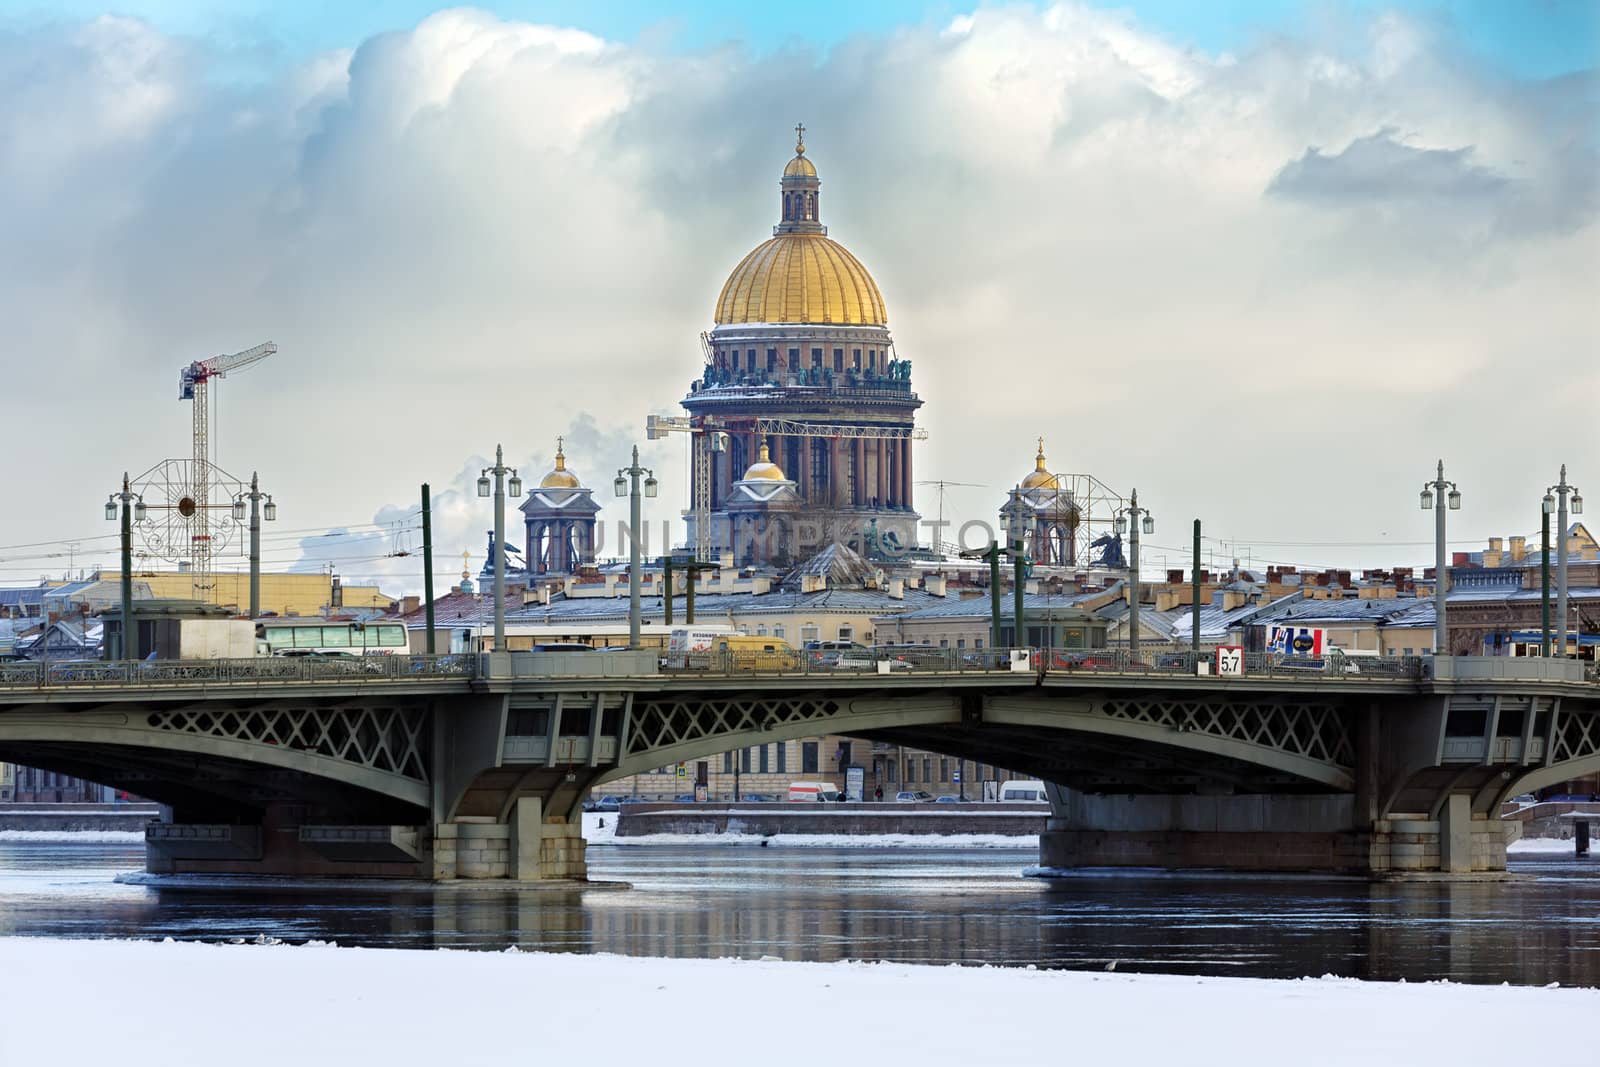 Blagoveshchensky bridge in St. Petersburg by Roka